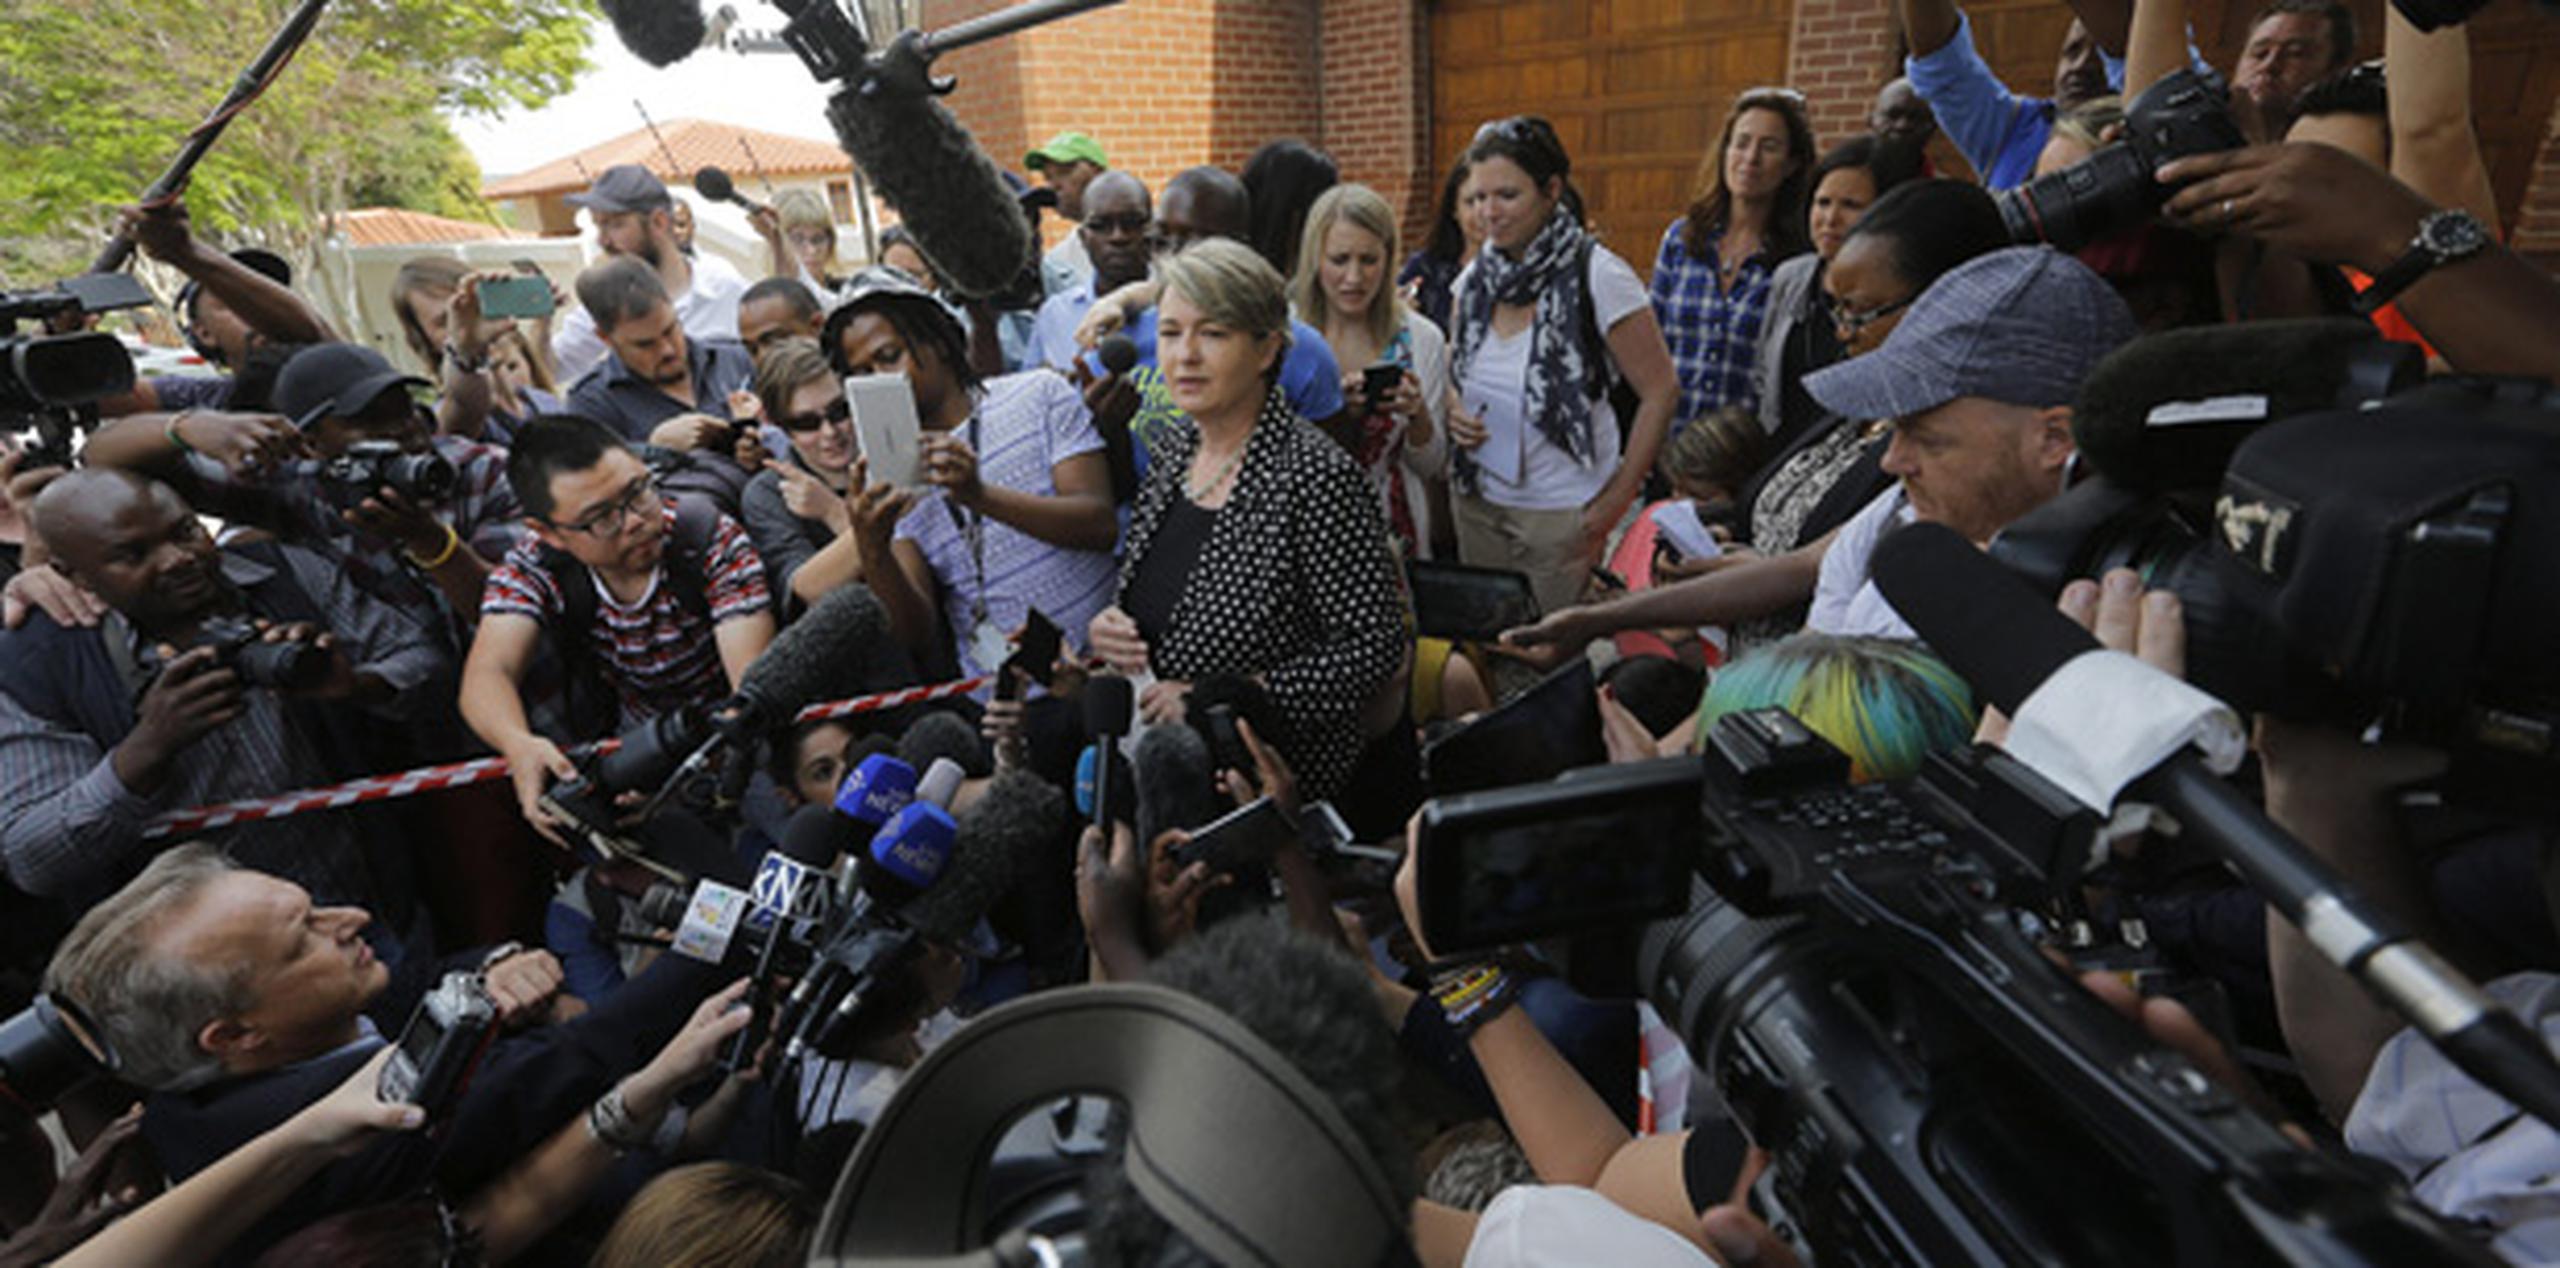 La portavoz de la familia Pistorius, Anneliese Burguess, se dirige a los medios de comunicación ante la casa del tío del atleta sudafricano Oscar Pistorius en Pretoria, Sudáfrica. (EFE)